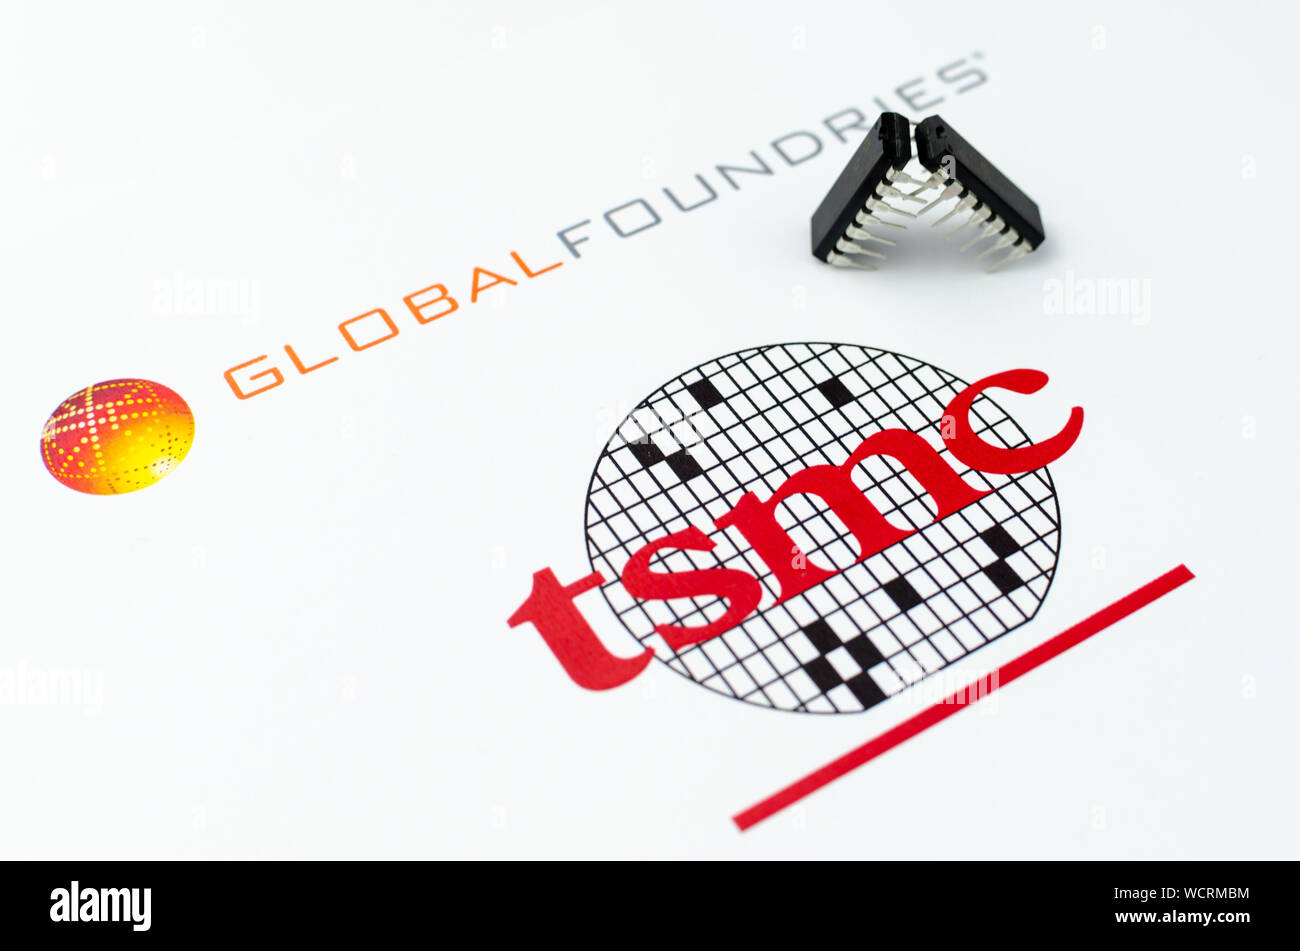 GLOBAL FONDERIE TSMC con logo stampato sulla carta e microchip un 'lotta' posizione. Foto concettuale illustra la battaglia legale tra la Foto Stock